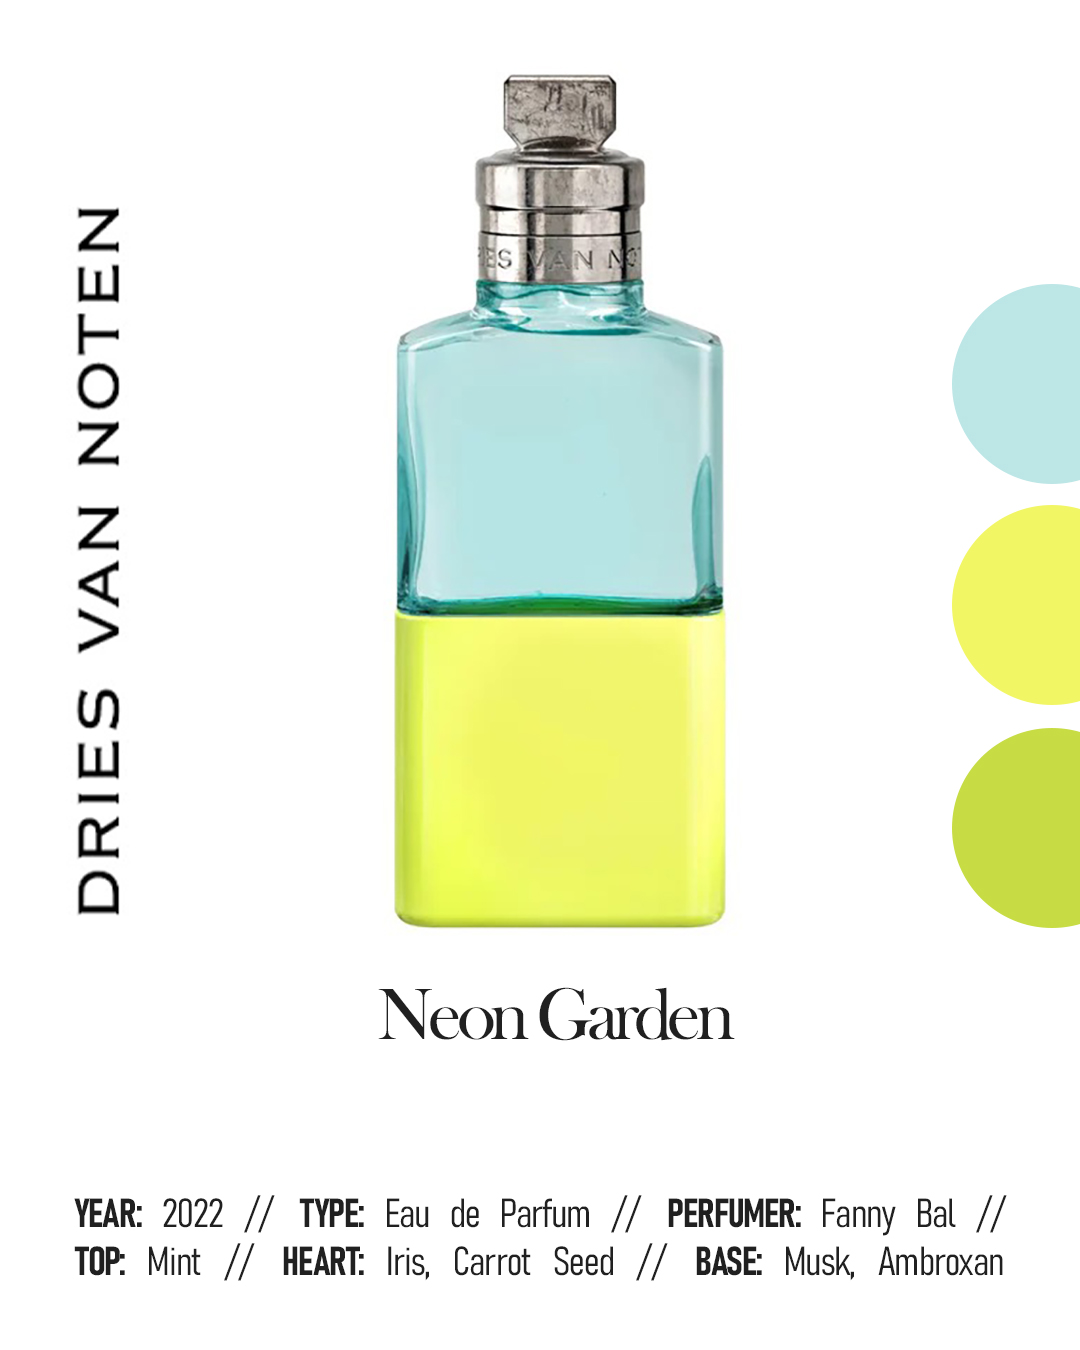 Dries Van Noten Neon Garden Eau de Parfum